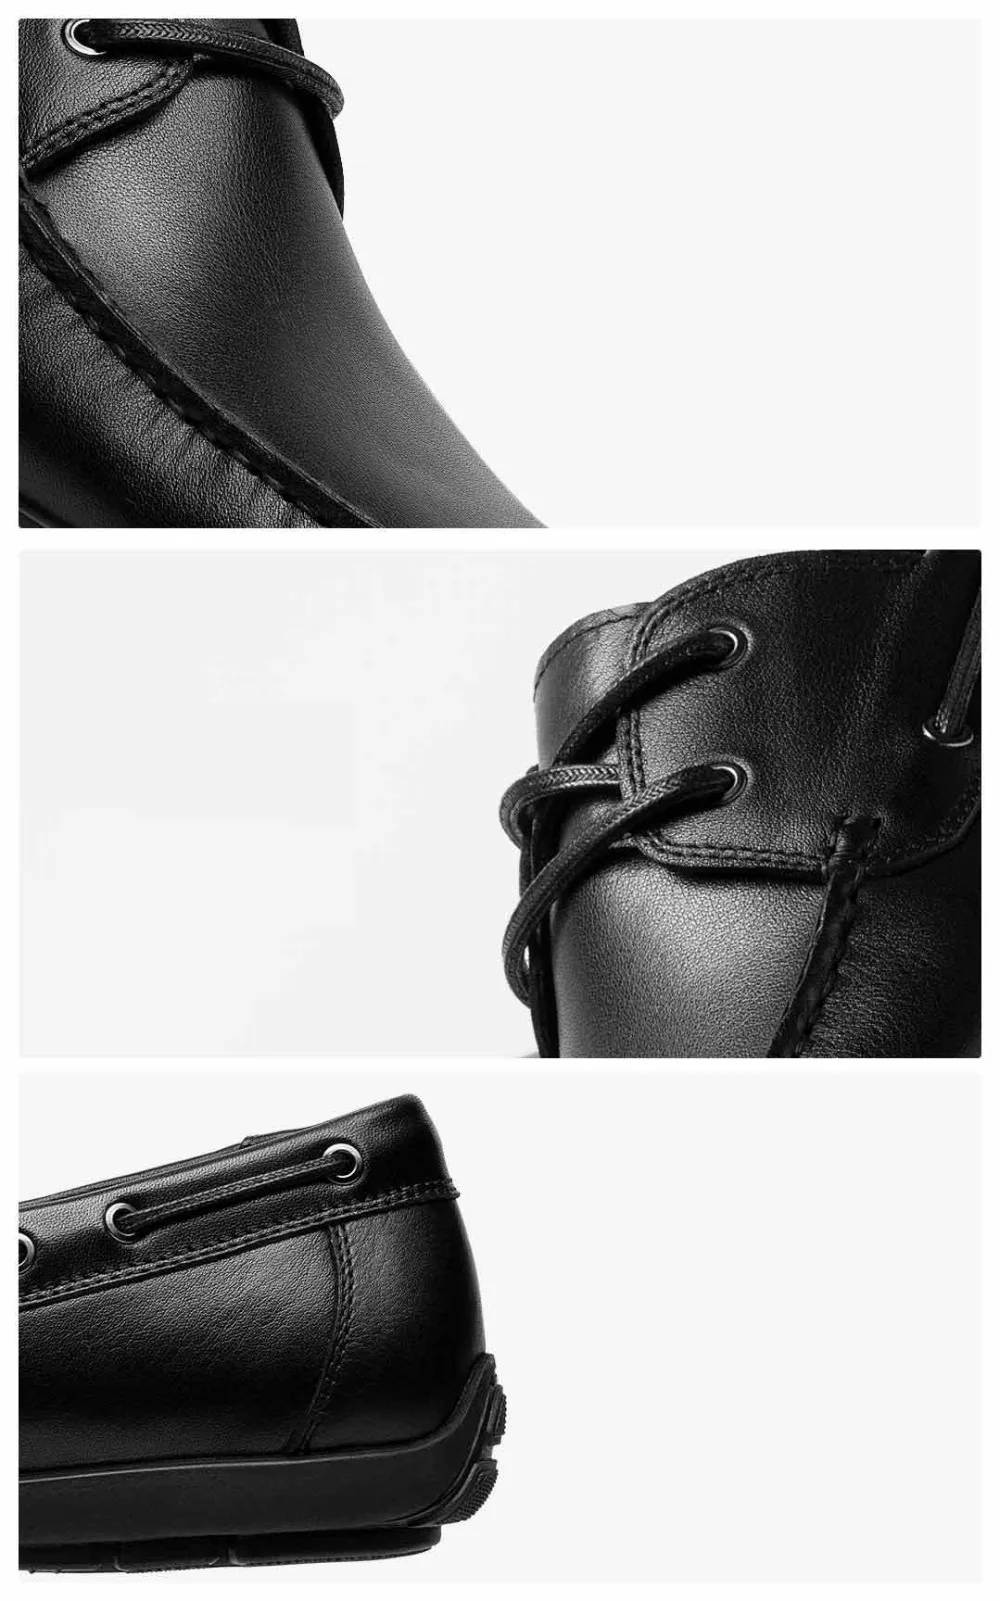 Xiaomi qimian Для мужчин в деловом стиле, на каждый день, первый слой из воловьей кожи; кожаные туфли; мягкие, очень легкие, модные плоские слипоны